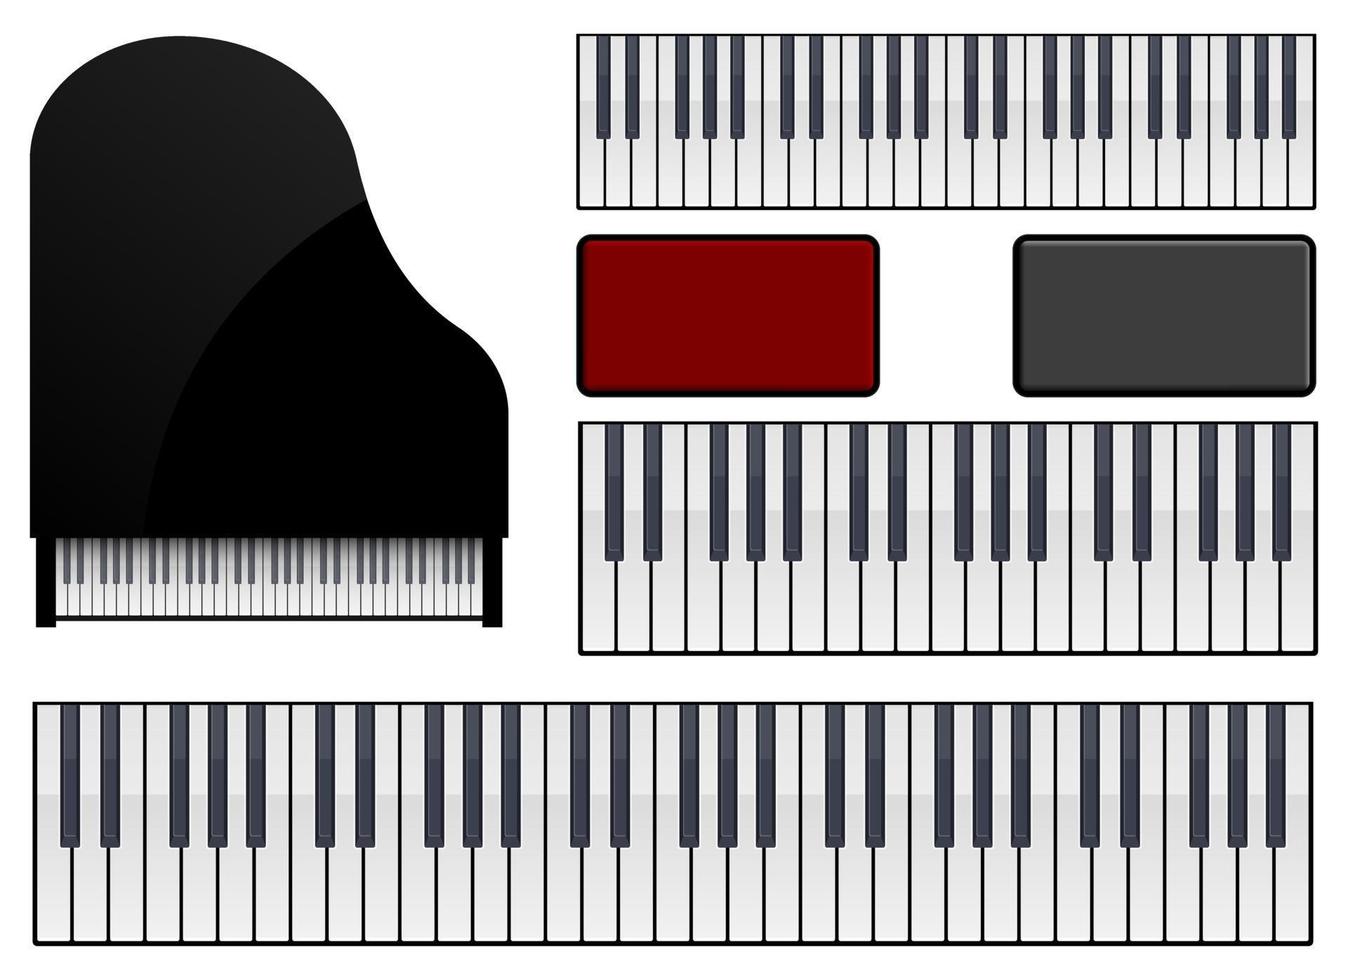 insieme dell'illustrazione di progettazione di vettore del pianoforte isolato su fondo bianco